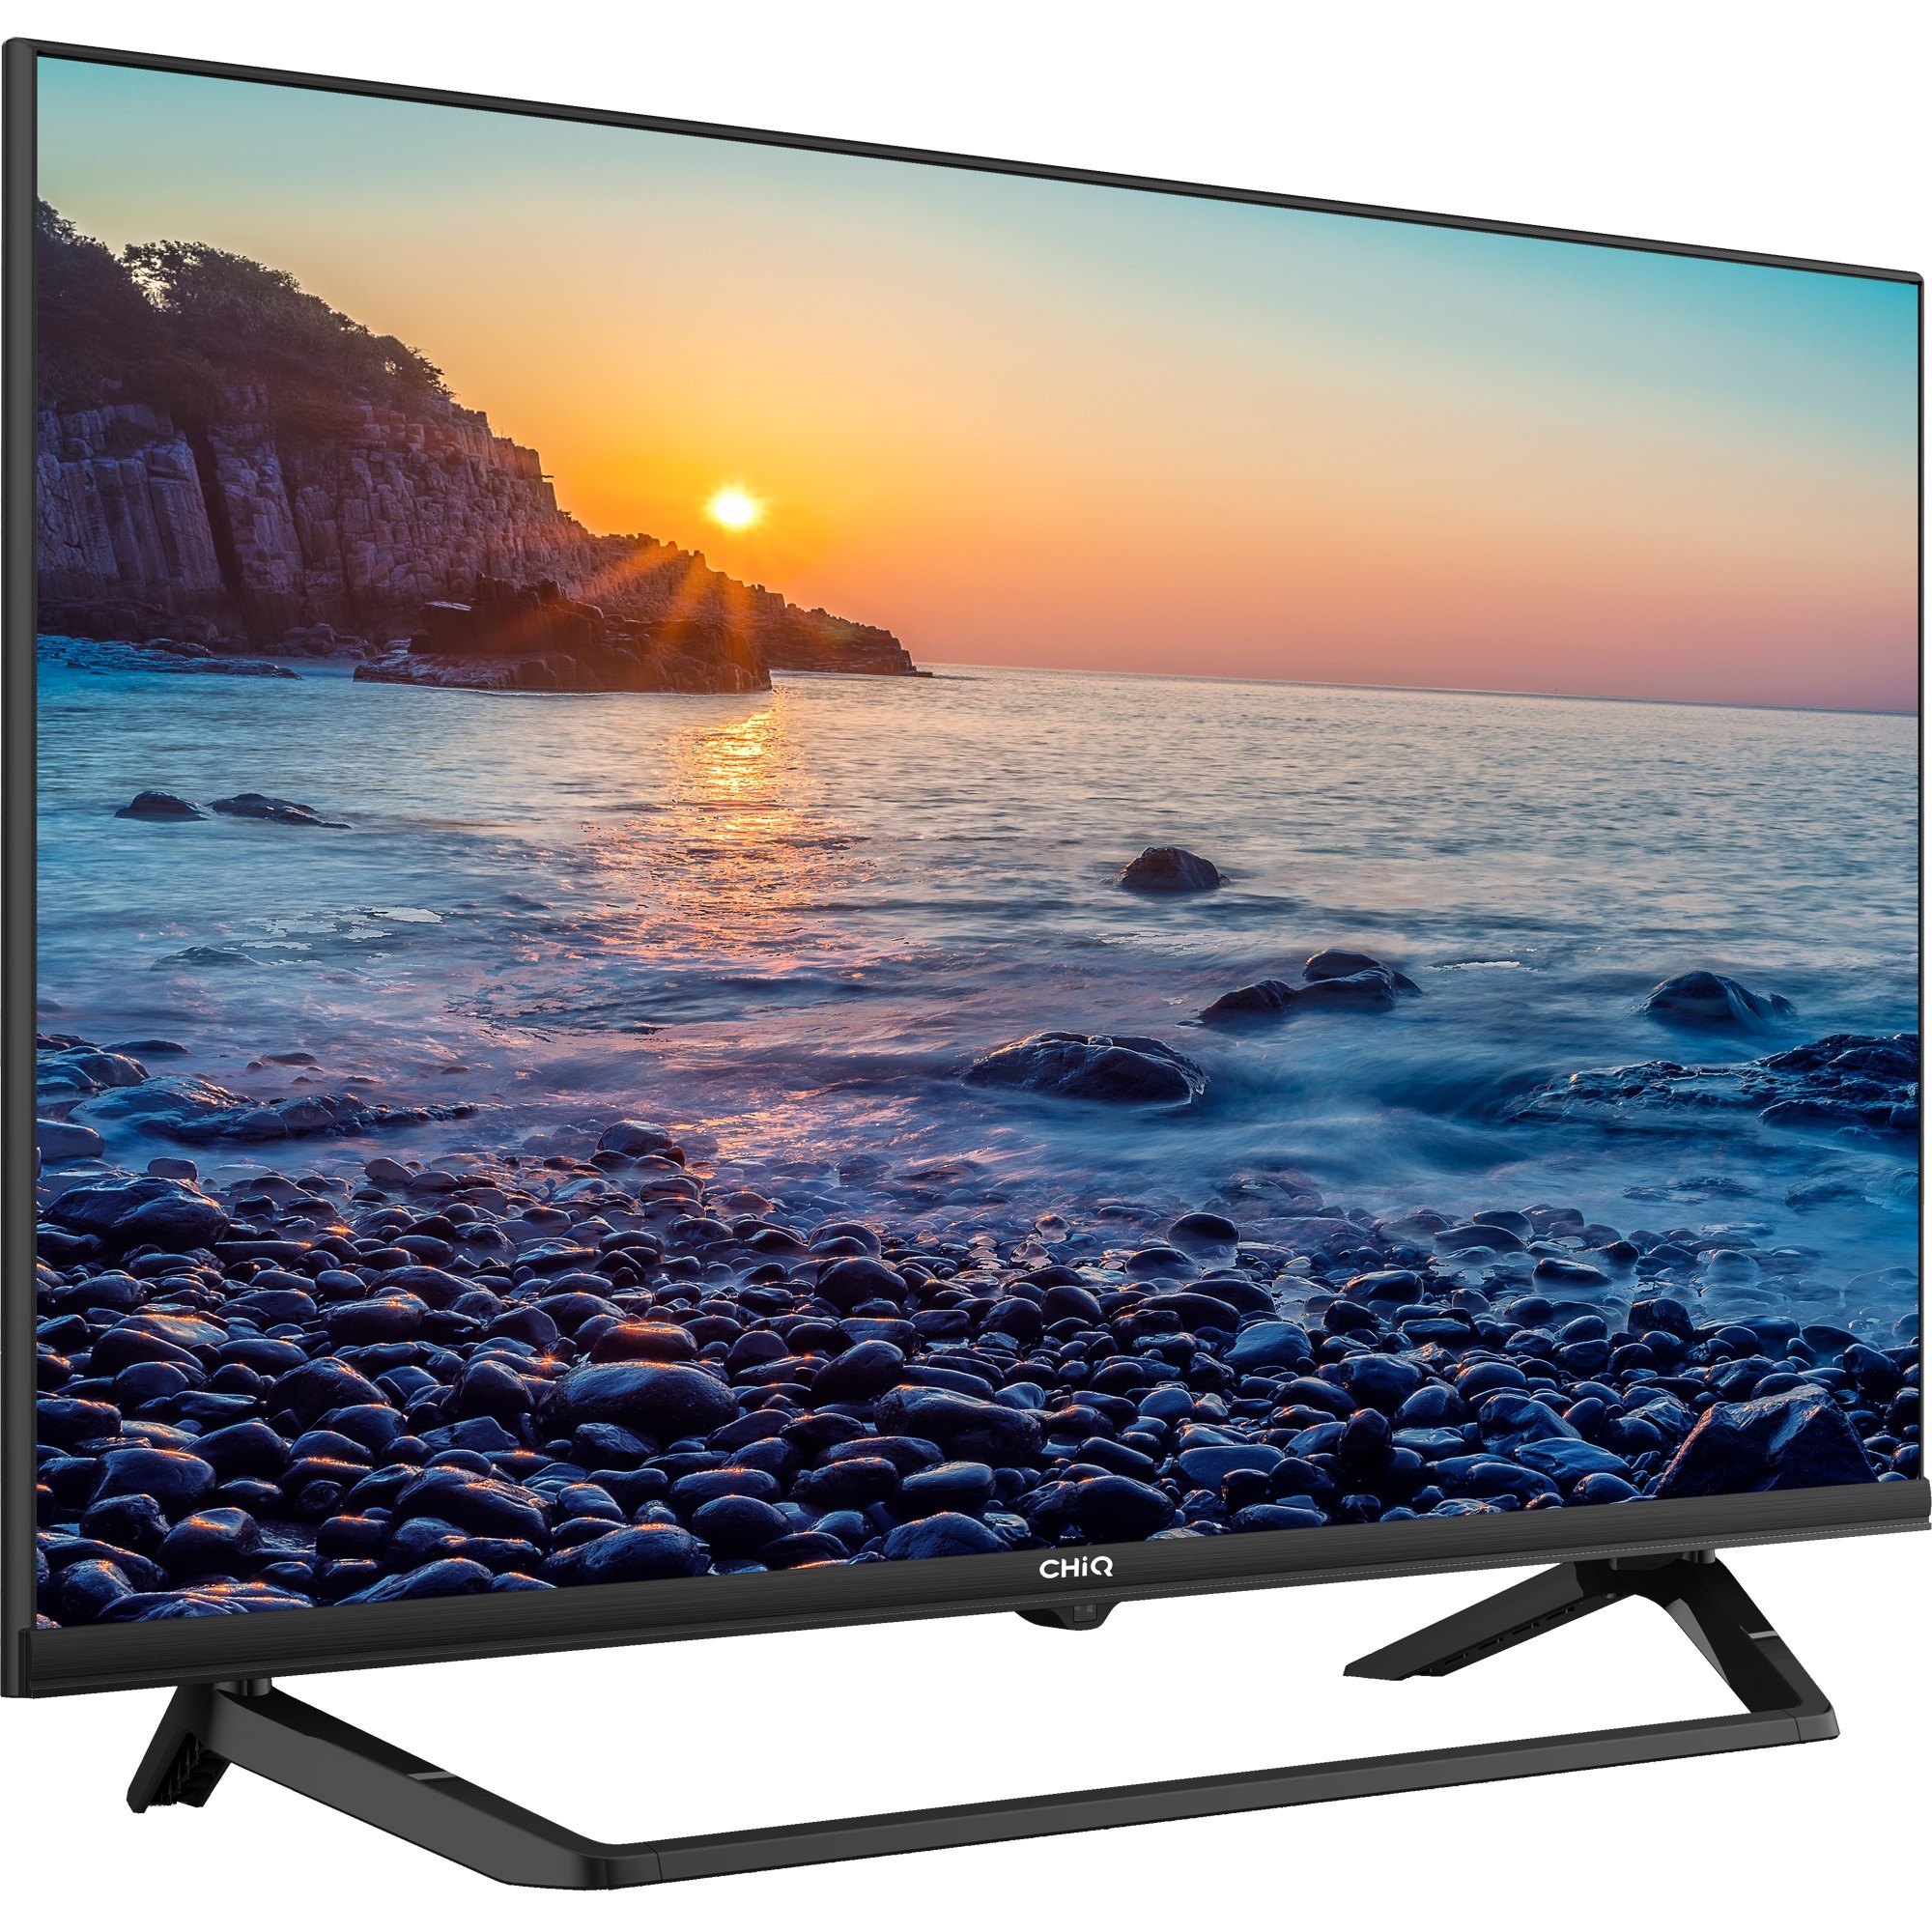 Image of Alternate - L32H7LX, LED-Fernseher online einkaufen bei Alternate